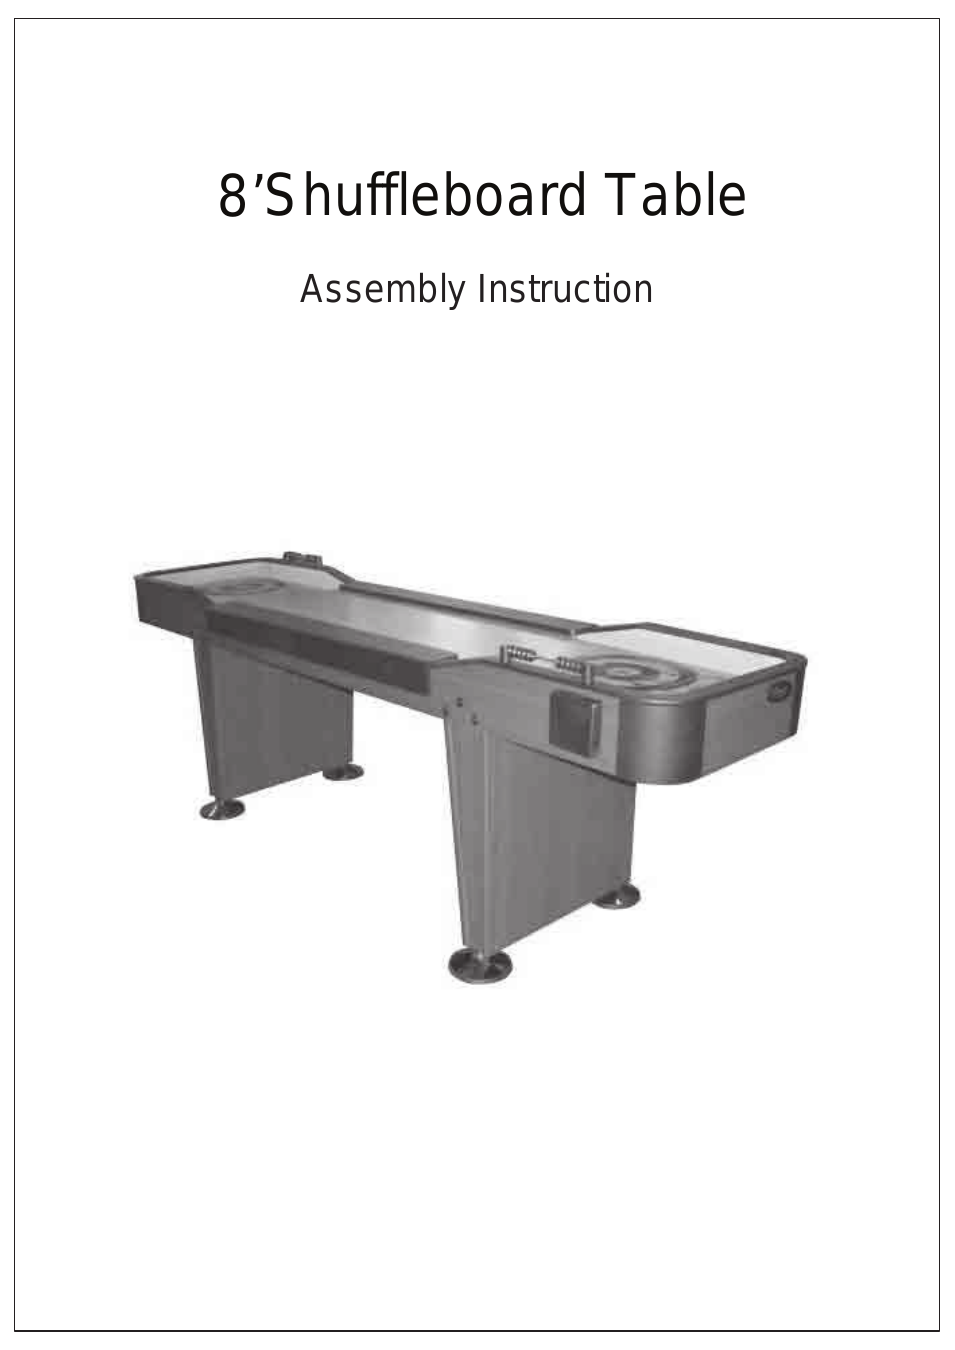 Shuffleboard Table #900351